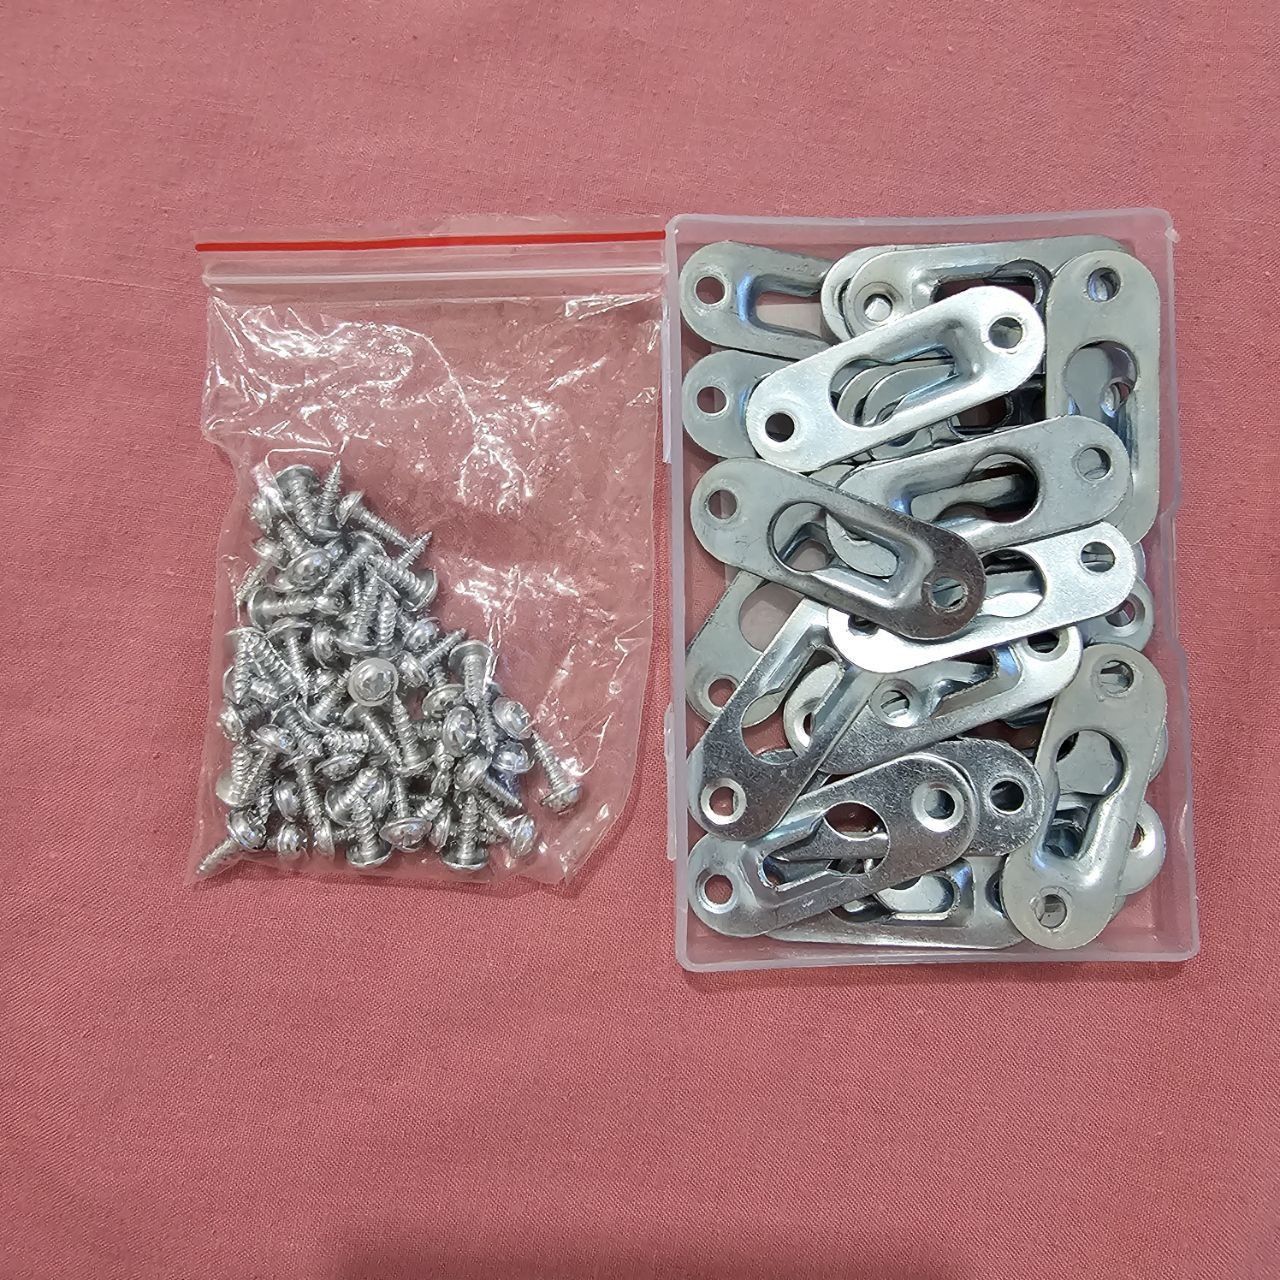 Umerașe DXLing pentru găuri de cheie, pachet de 30 de cleme argintii p